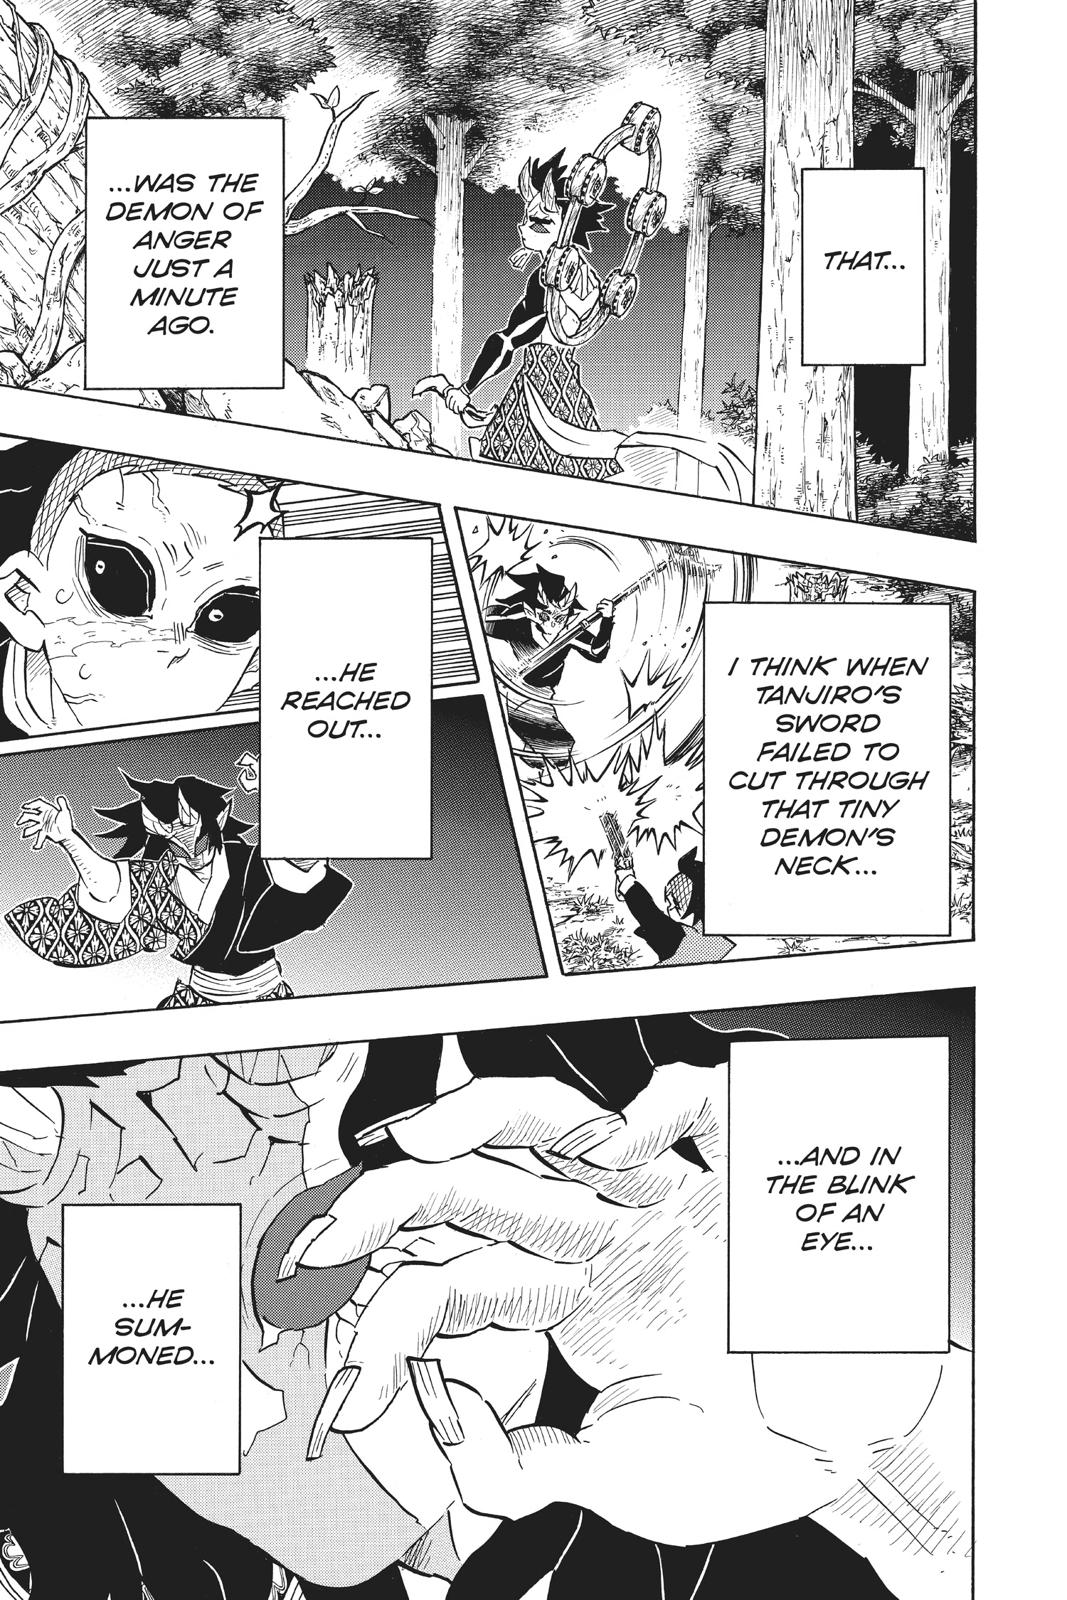 Demon Slayer Manga Manga Chapter - 116 - image 14